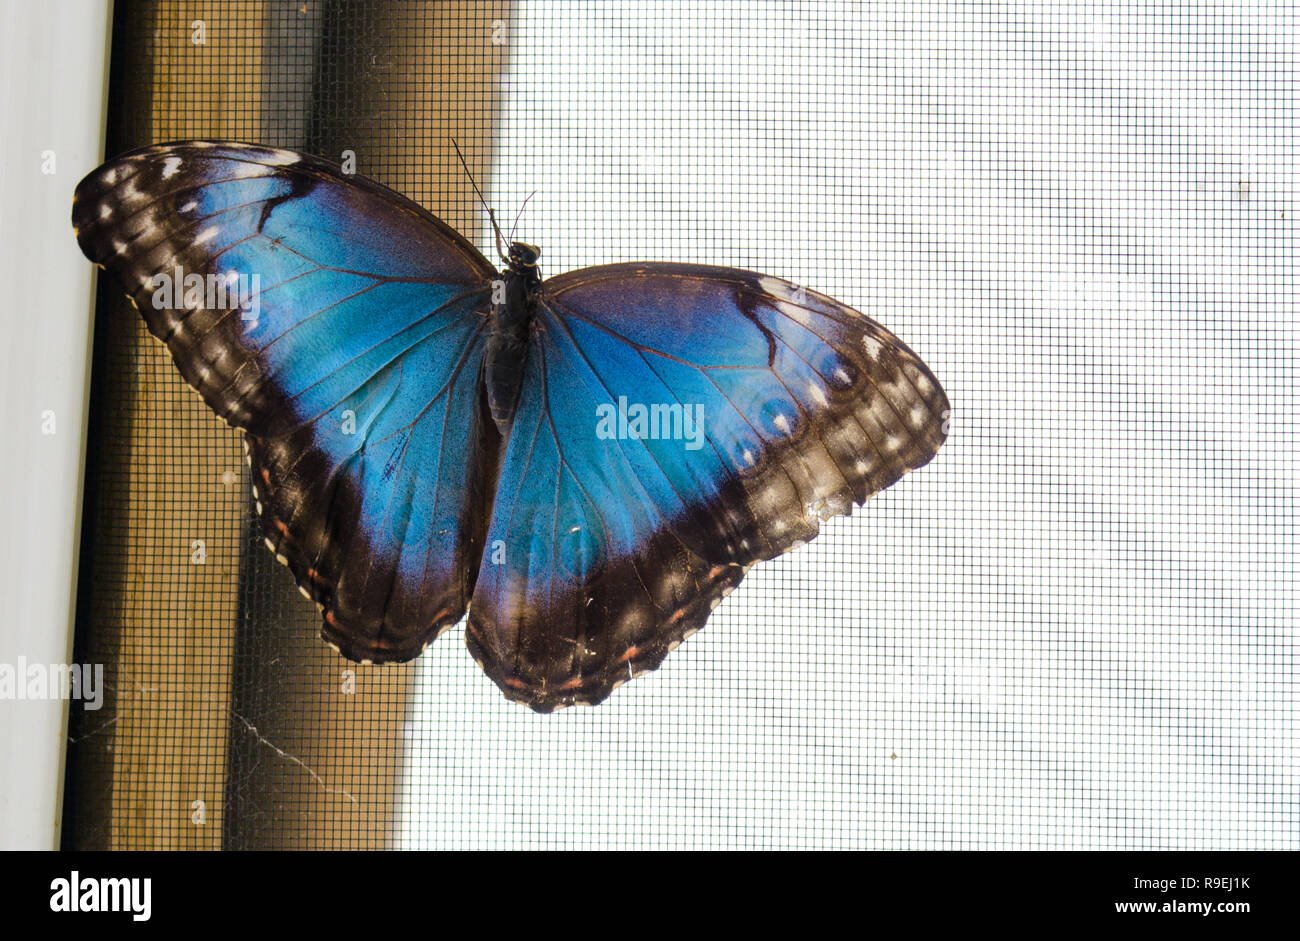 Common blue morpho butterfly (Morpho peleides). Stock Photo